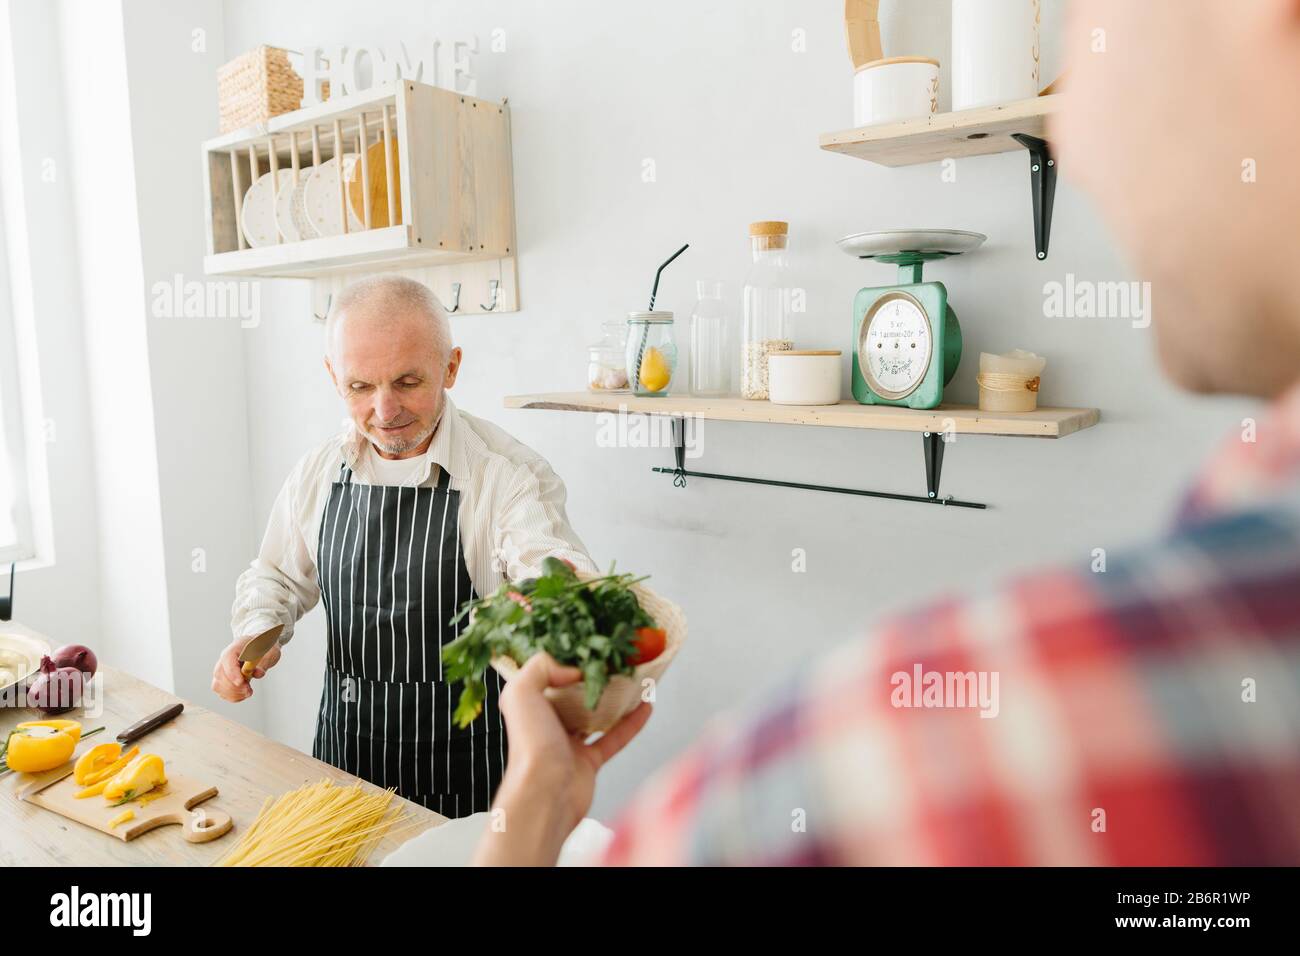 Jeune homme et son père cuisiniers dans la cuisine Banque D'Images